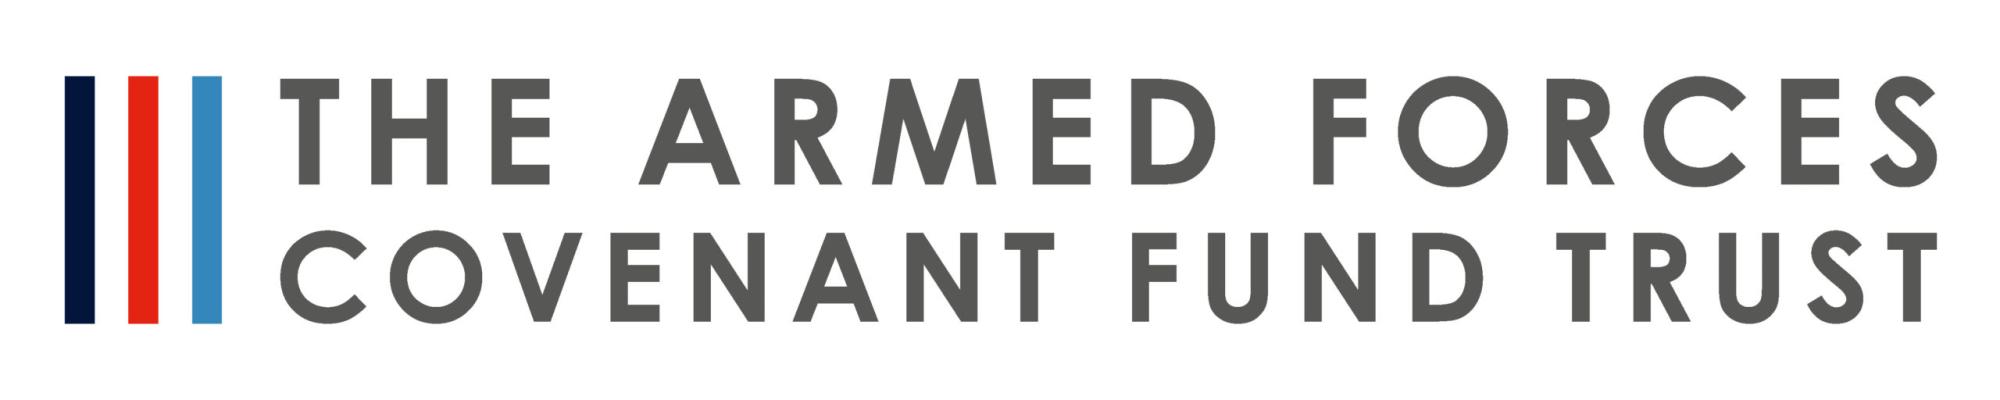 AFCFT logo